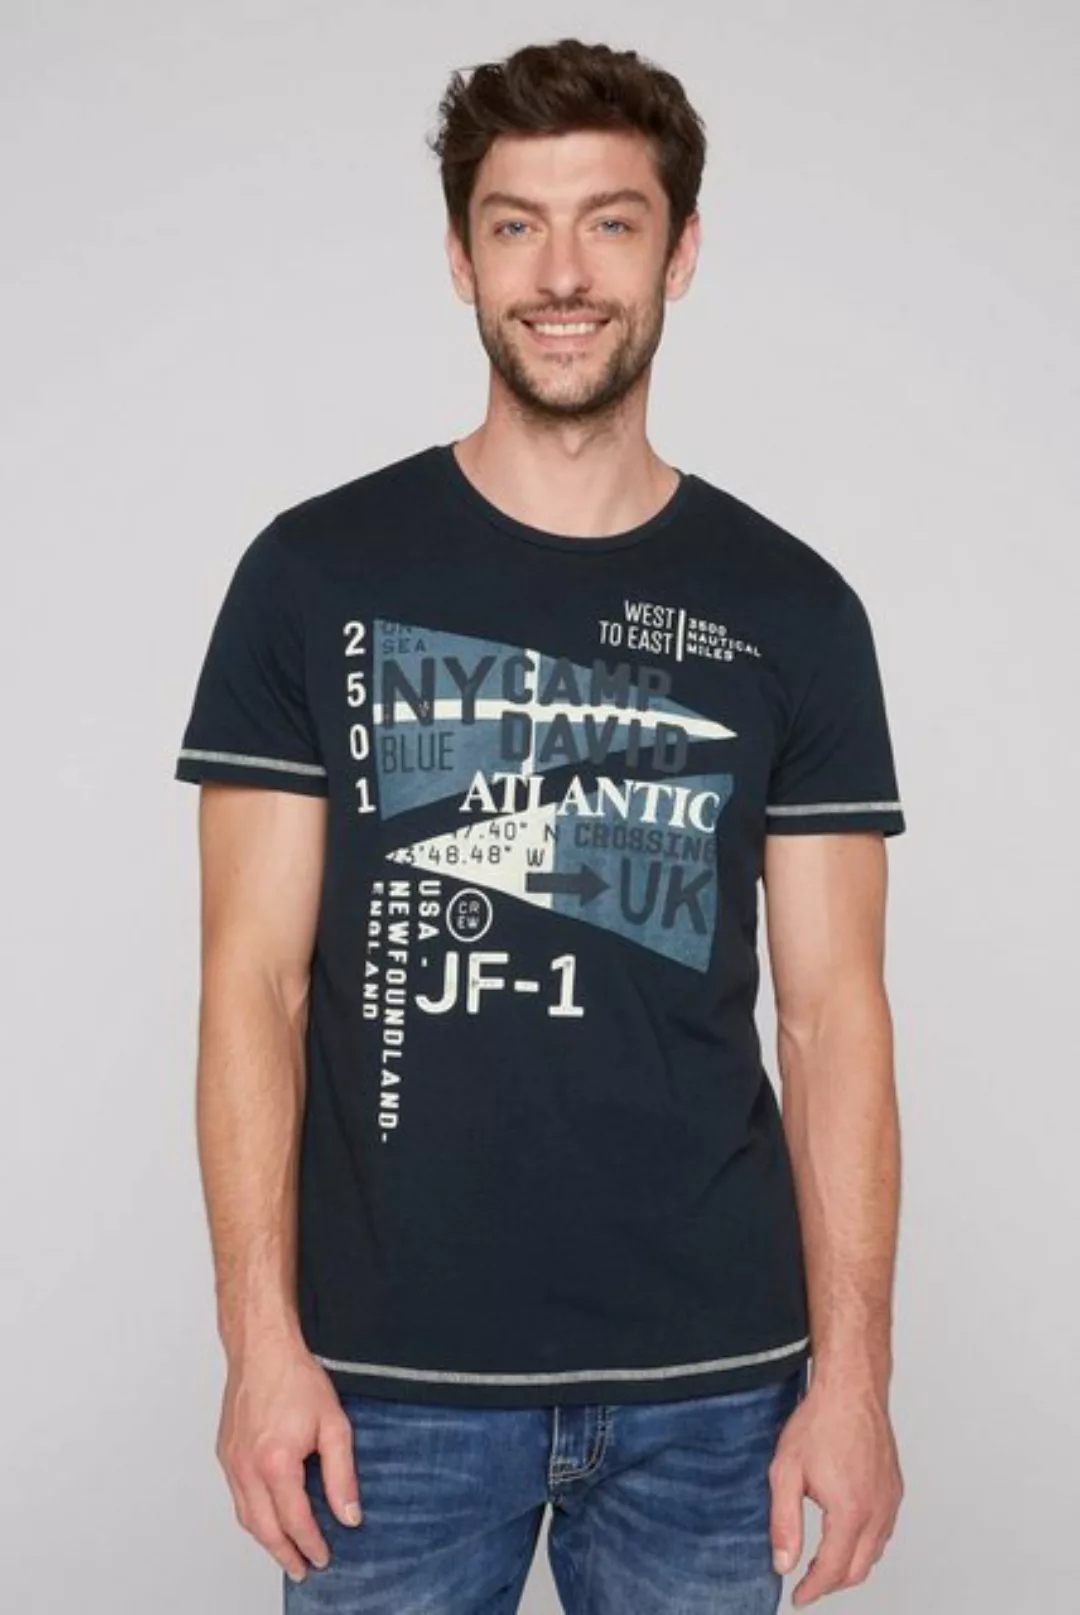 CAMP DAVID T-Shirt mit kontrastfarbener Steppung günstig online kaufen